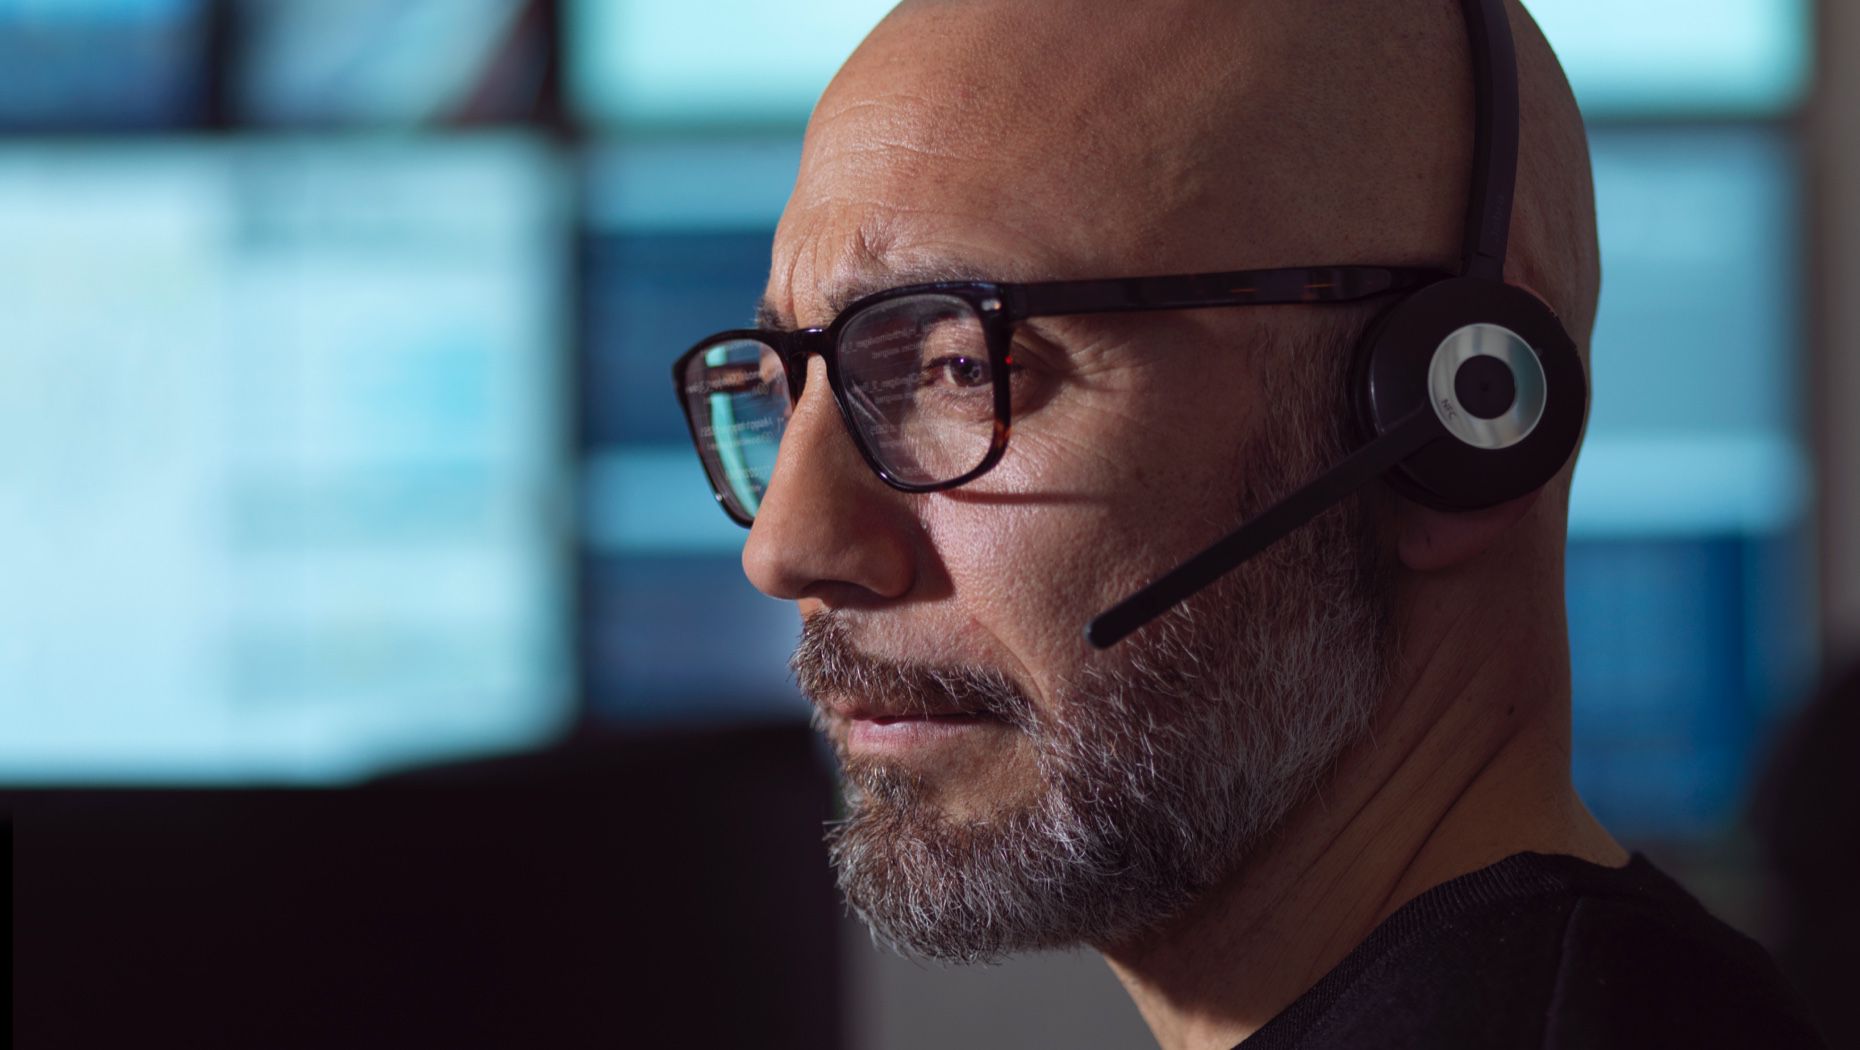 Közelkép egy emberről, aki szemüveggel és mikrofonos fejhallgatóval néz egy számítógép-monitorra.